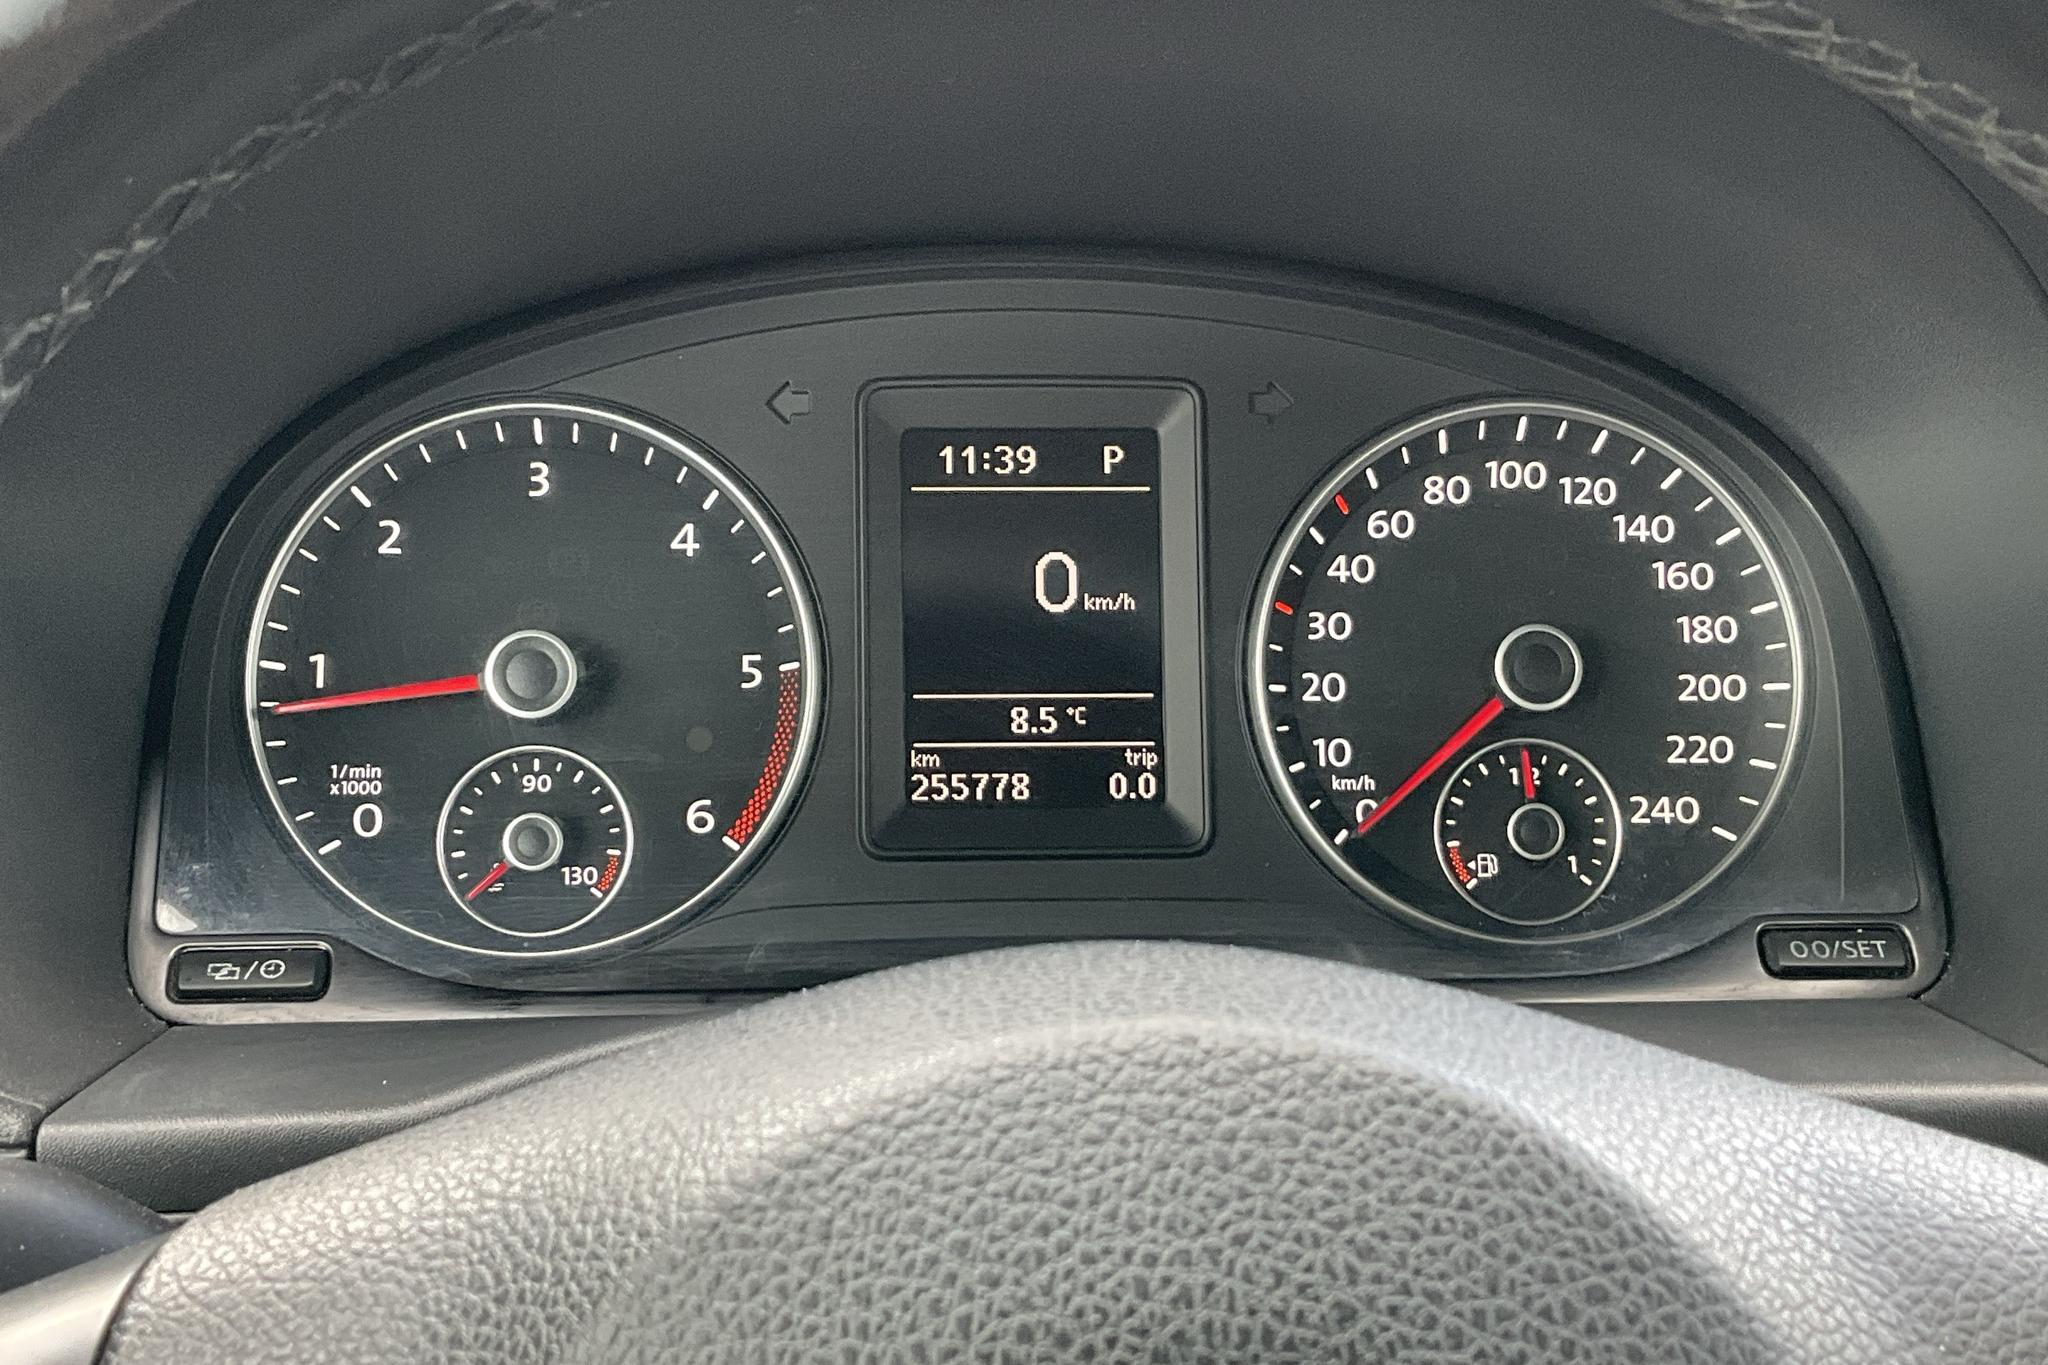 VW Caddy Life 1.6 TDI (102hk) - 25 578 mil - Automat - svart - 2014